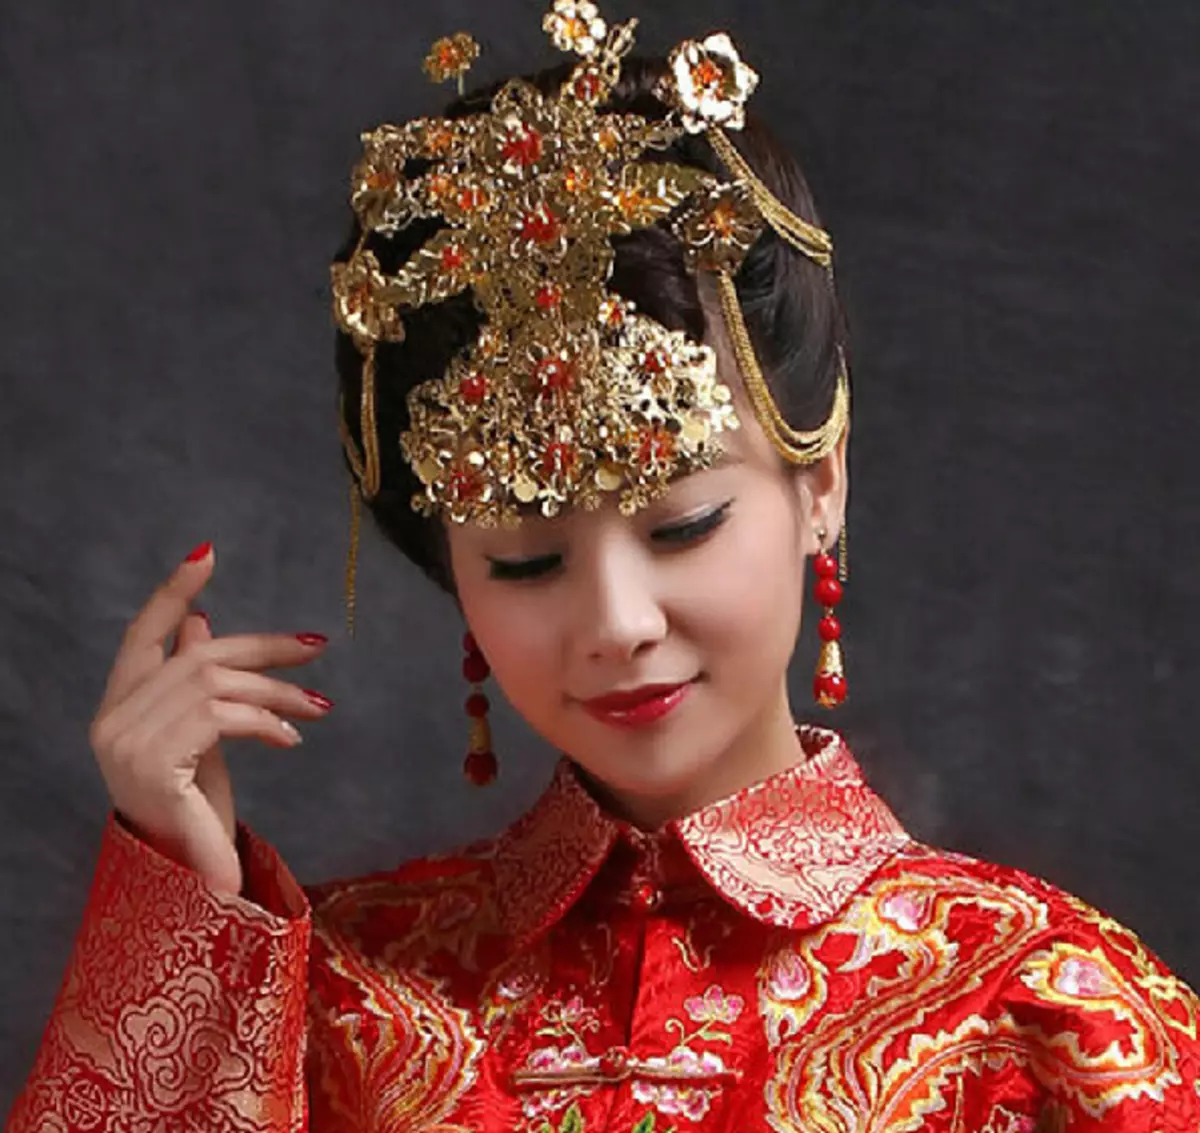 החליפה הלאומית הסינית (73 תמונות): תלבושת נקבה מסורתית של עמי סין, חליפה לילדה 1377_57